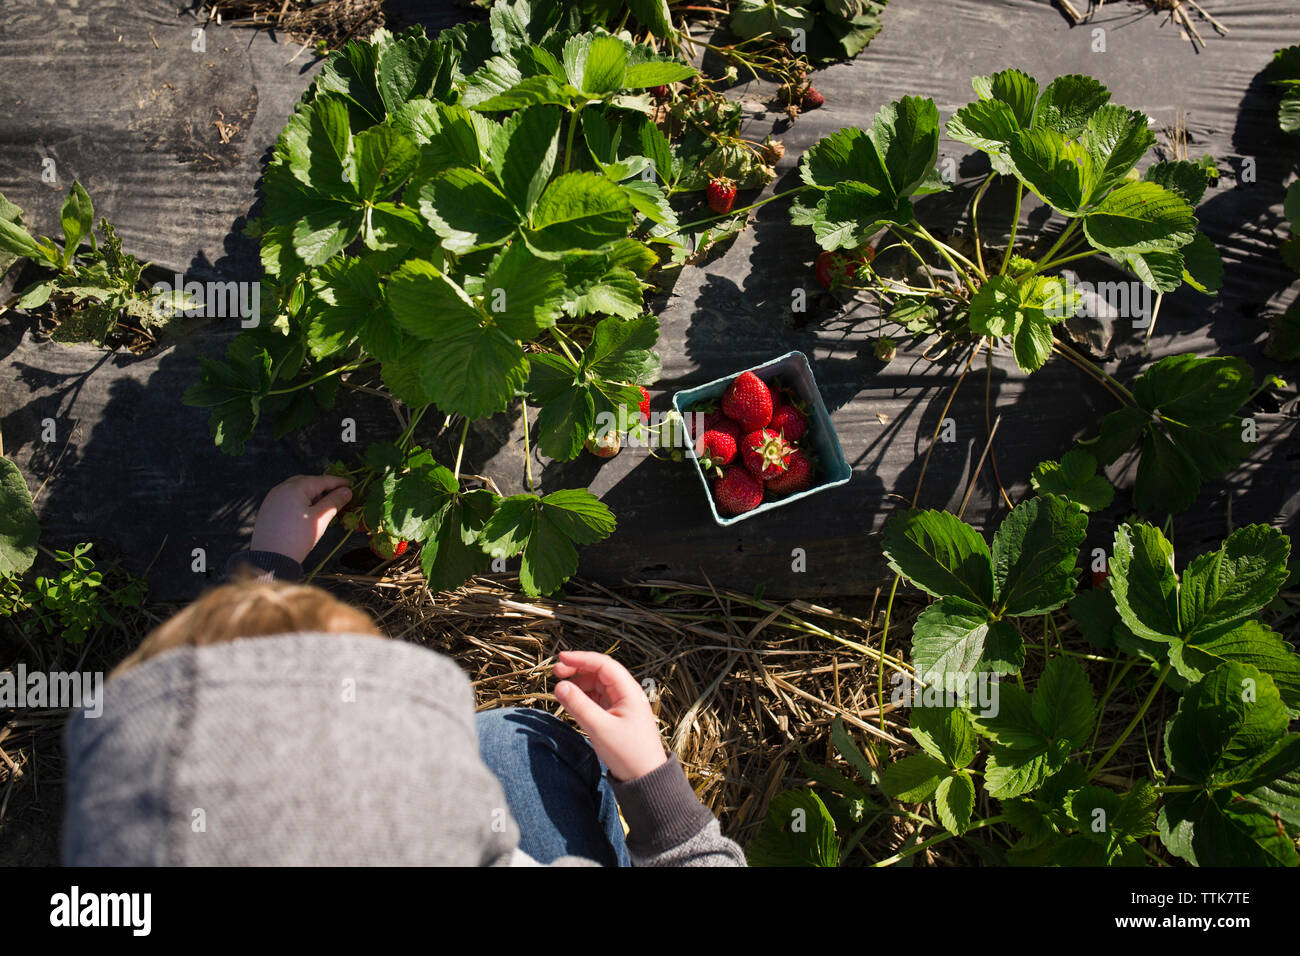 Vue de dessus de la cueillette des fraises garçon à partir de plantes au niveau de l'exploitation Banque D'Images